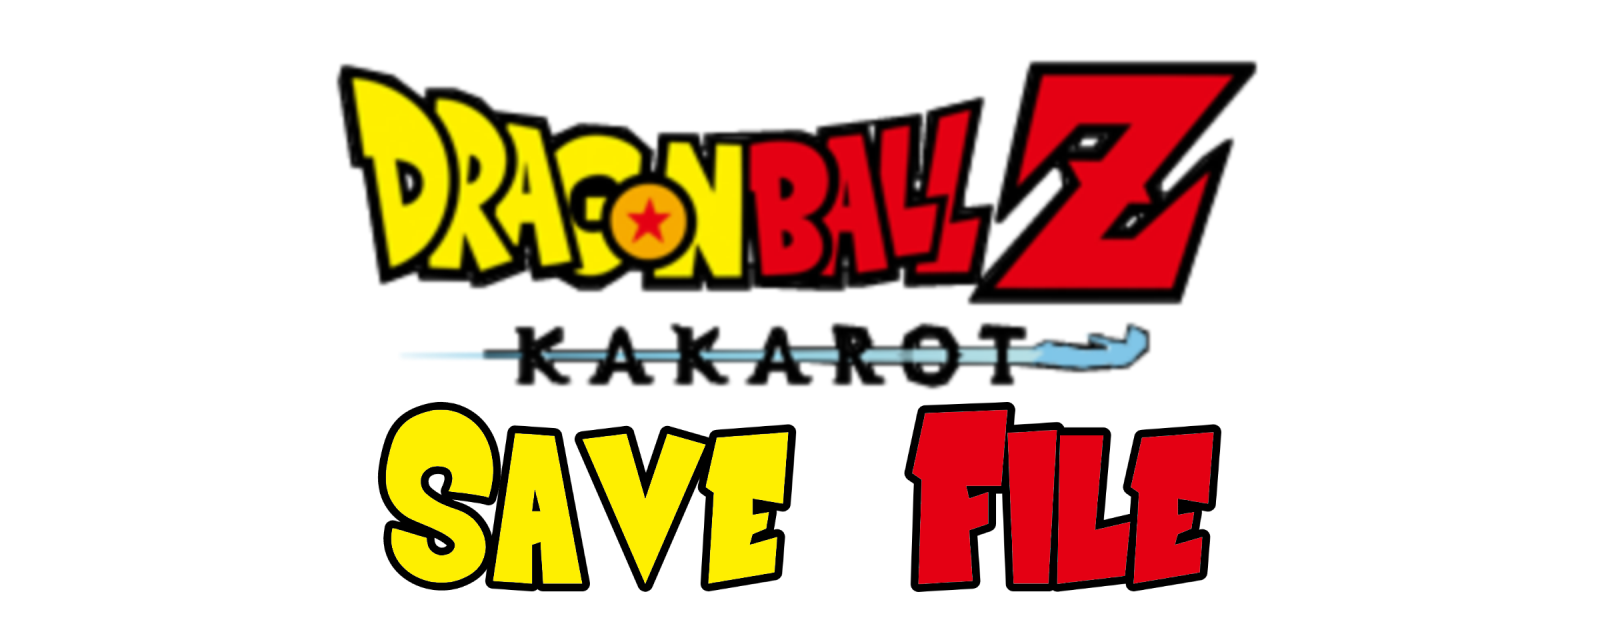 Dragon Ball Z Kakarot 100 Save File Read The Description V1 20 Support Kakarot Mods - como jogar dragon ball forces test place no roblox 2021